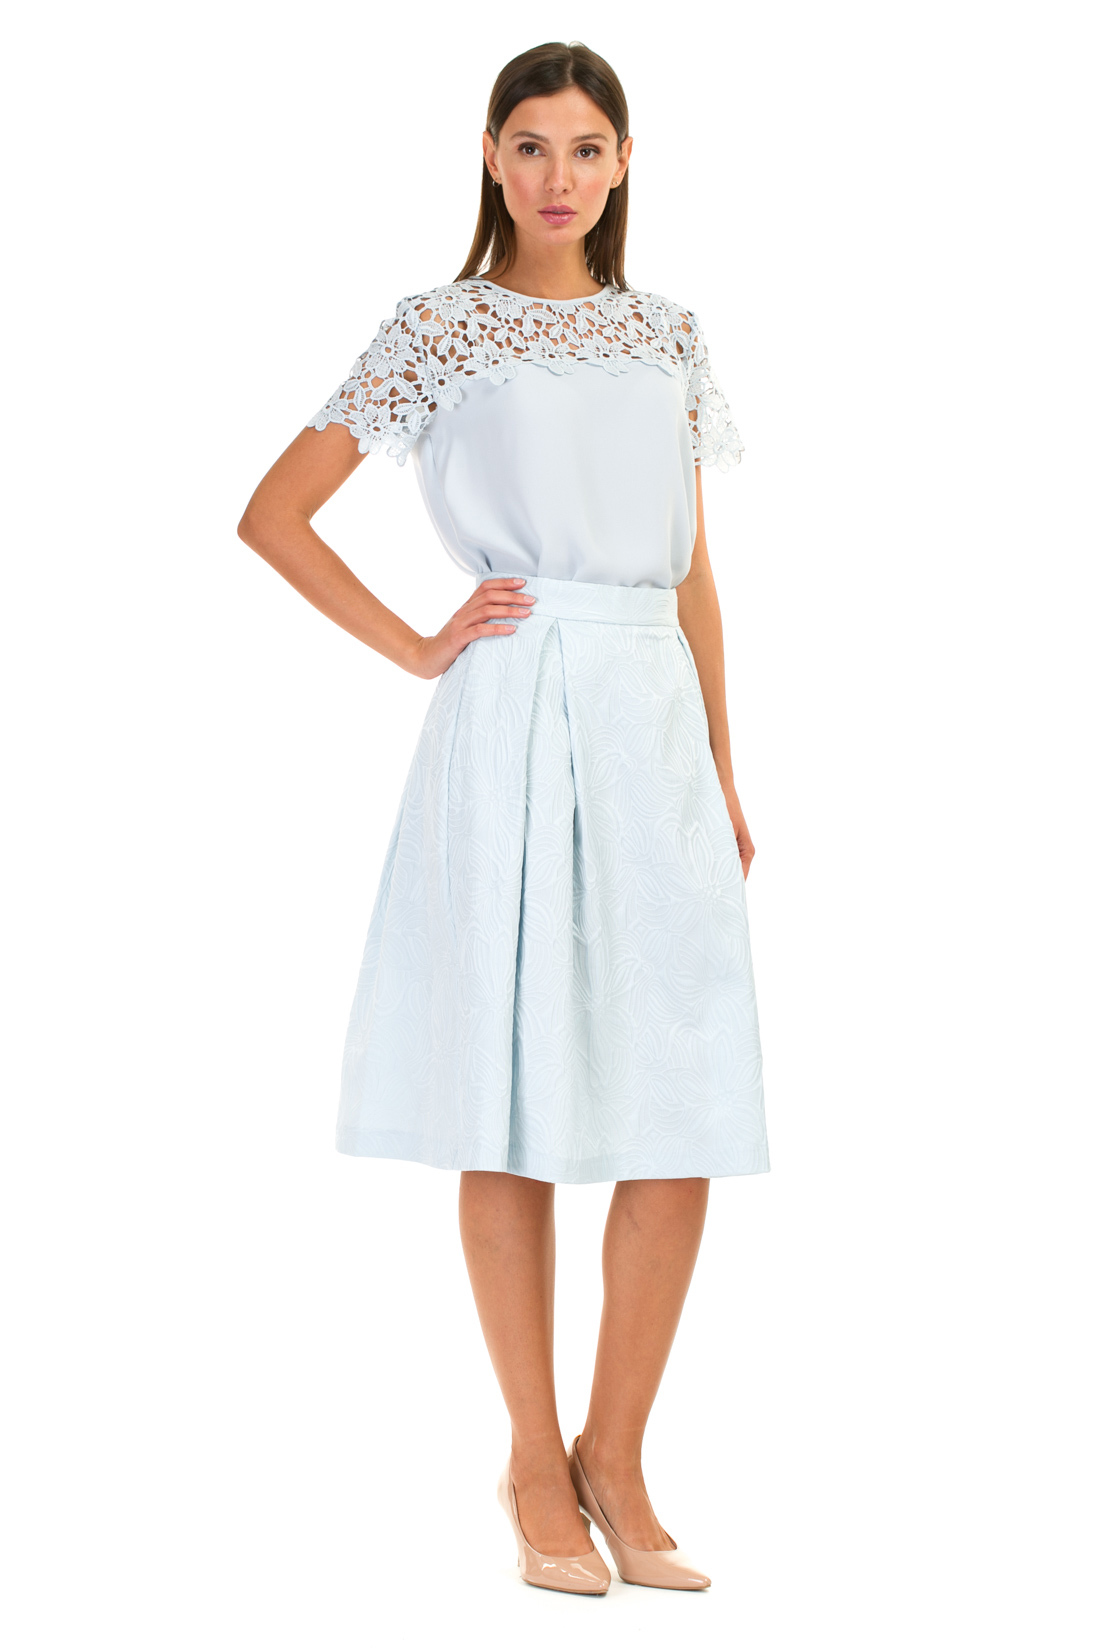 Пышная юбка из жаккардового материала (арт. baon B477027), размер M, цвет белый Пышная юбка из жаккардового материала (арт. baon B477027) - фото 1